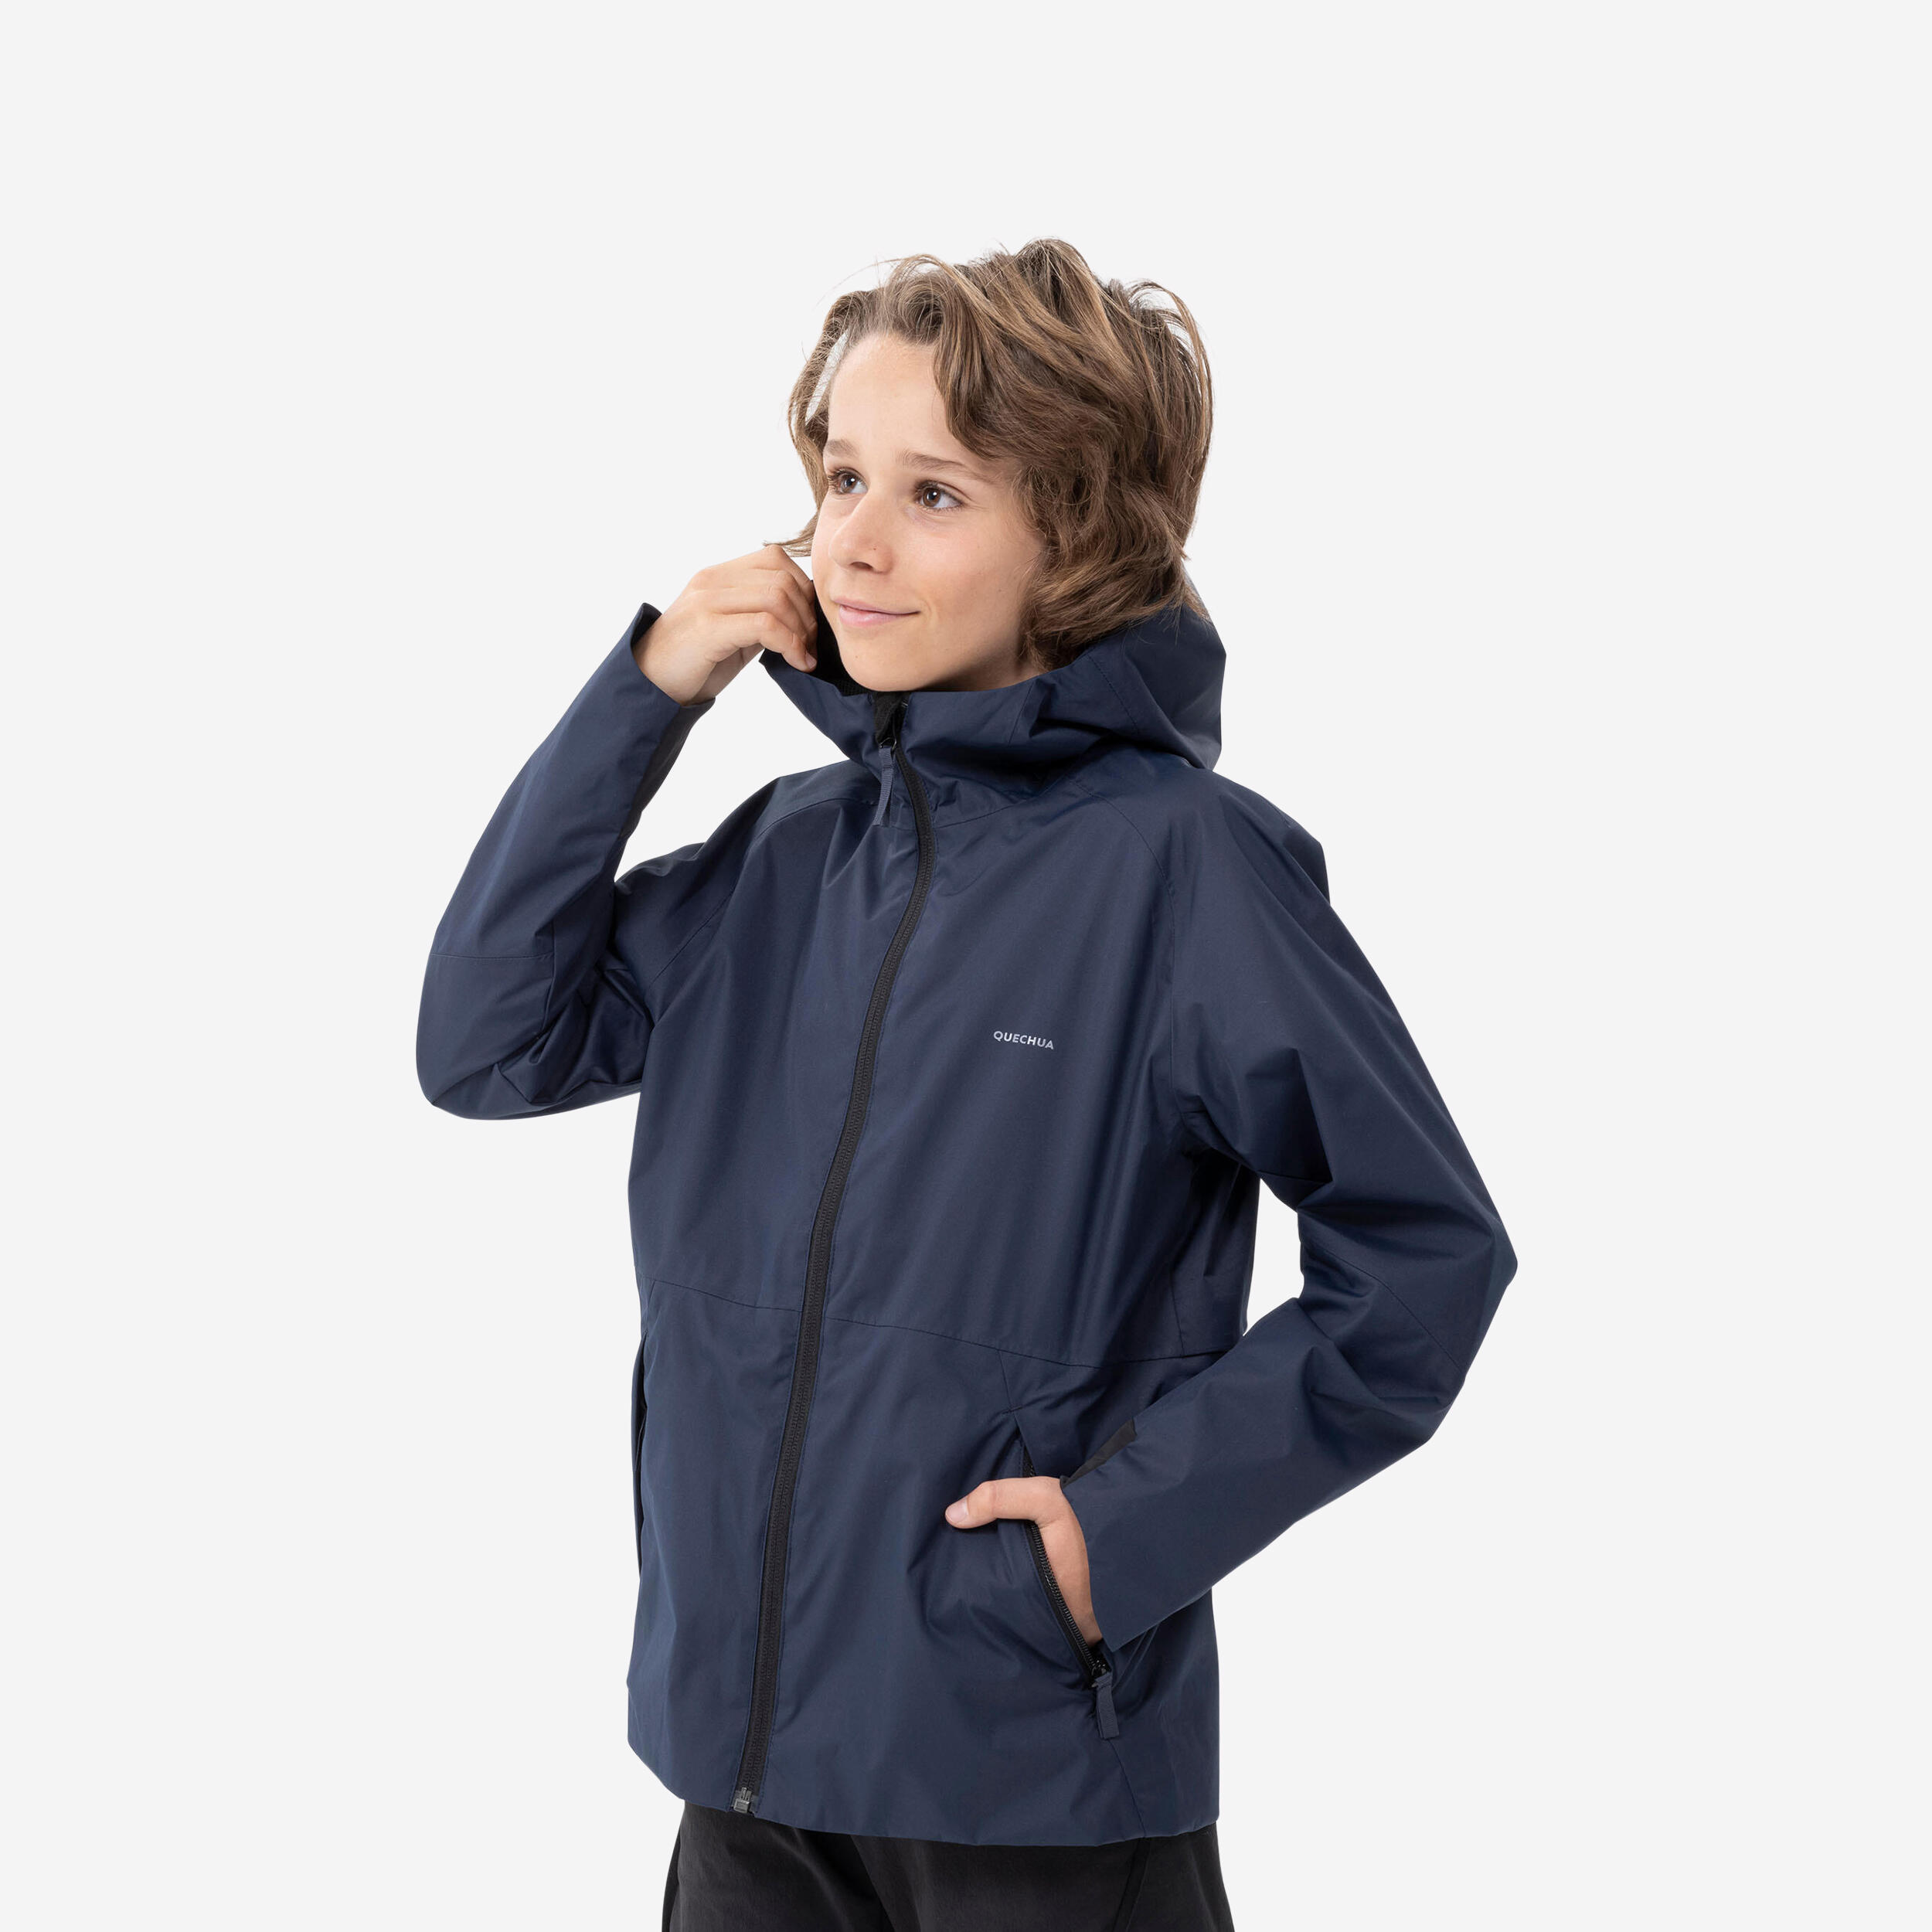 Manteau imperméable enfant – MH 500 bleu marine - QUECHUA